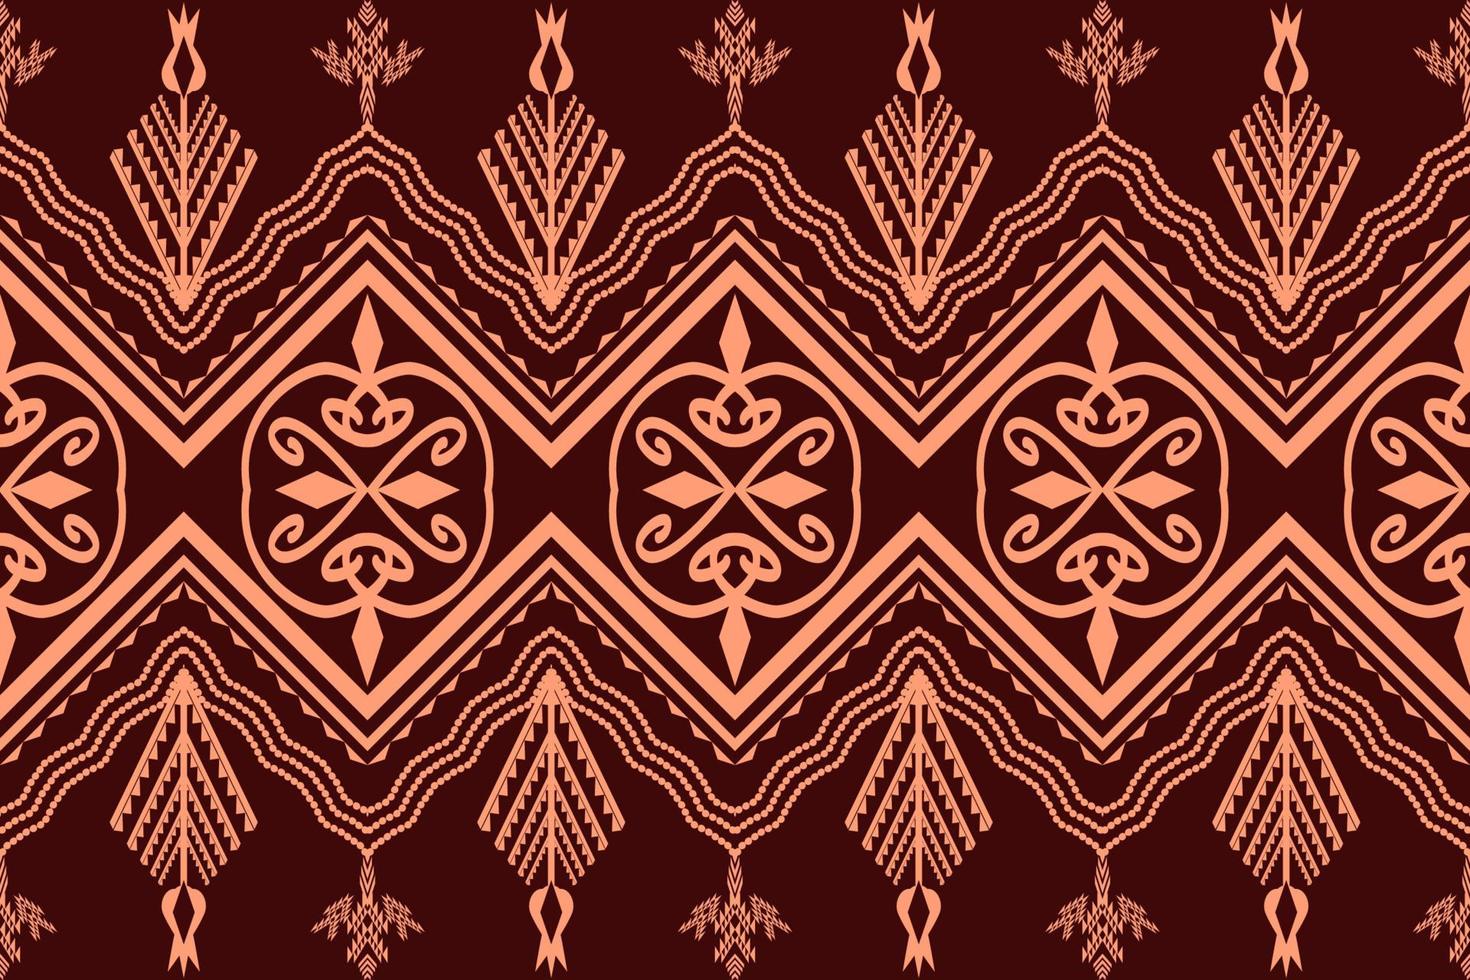 geometriska etniska orientaliska traditionella mönster. figur stambroderi stil. design för tapeter, kläder, omslag, tyg, vektorillustration vektor